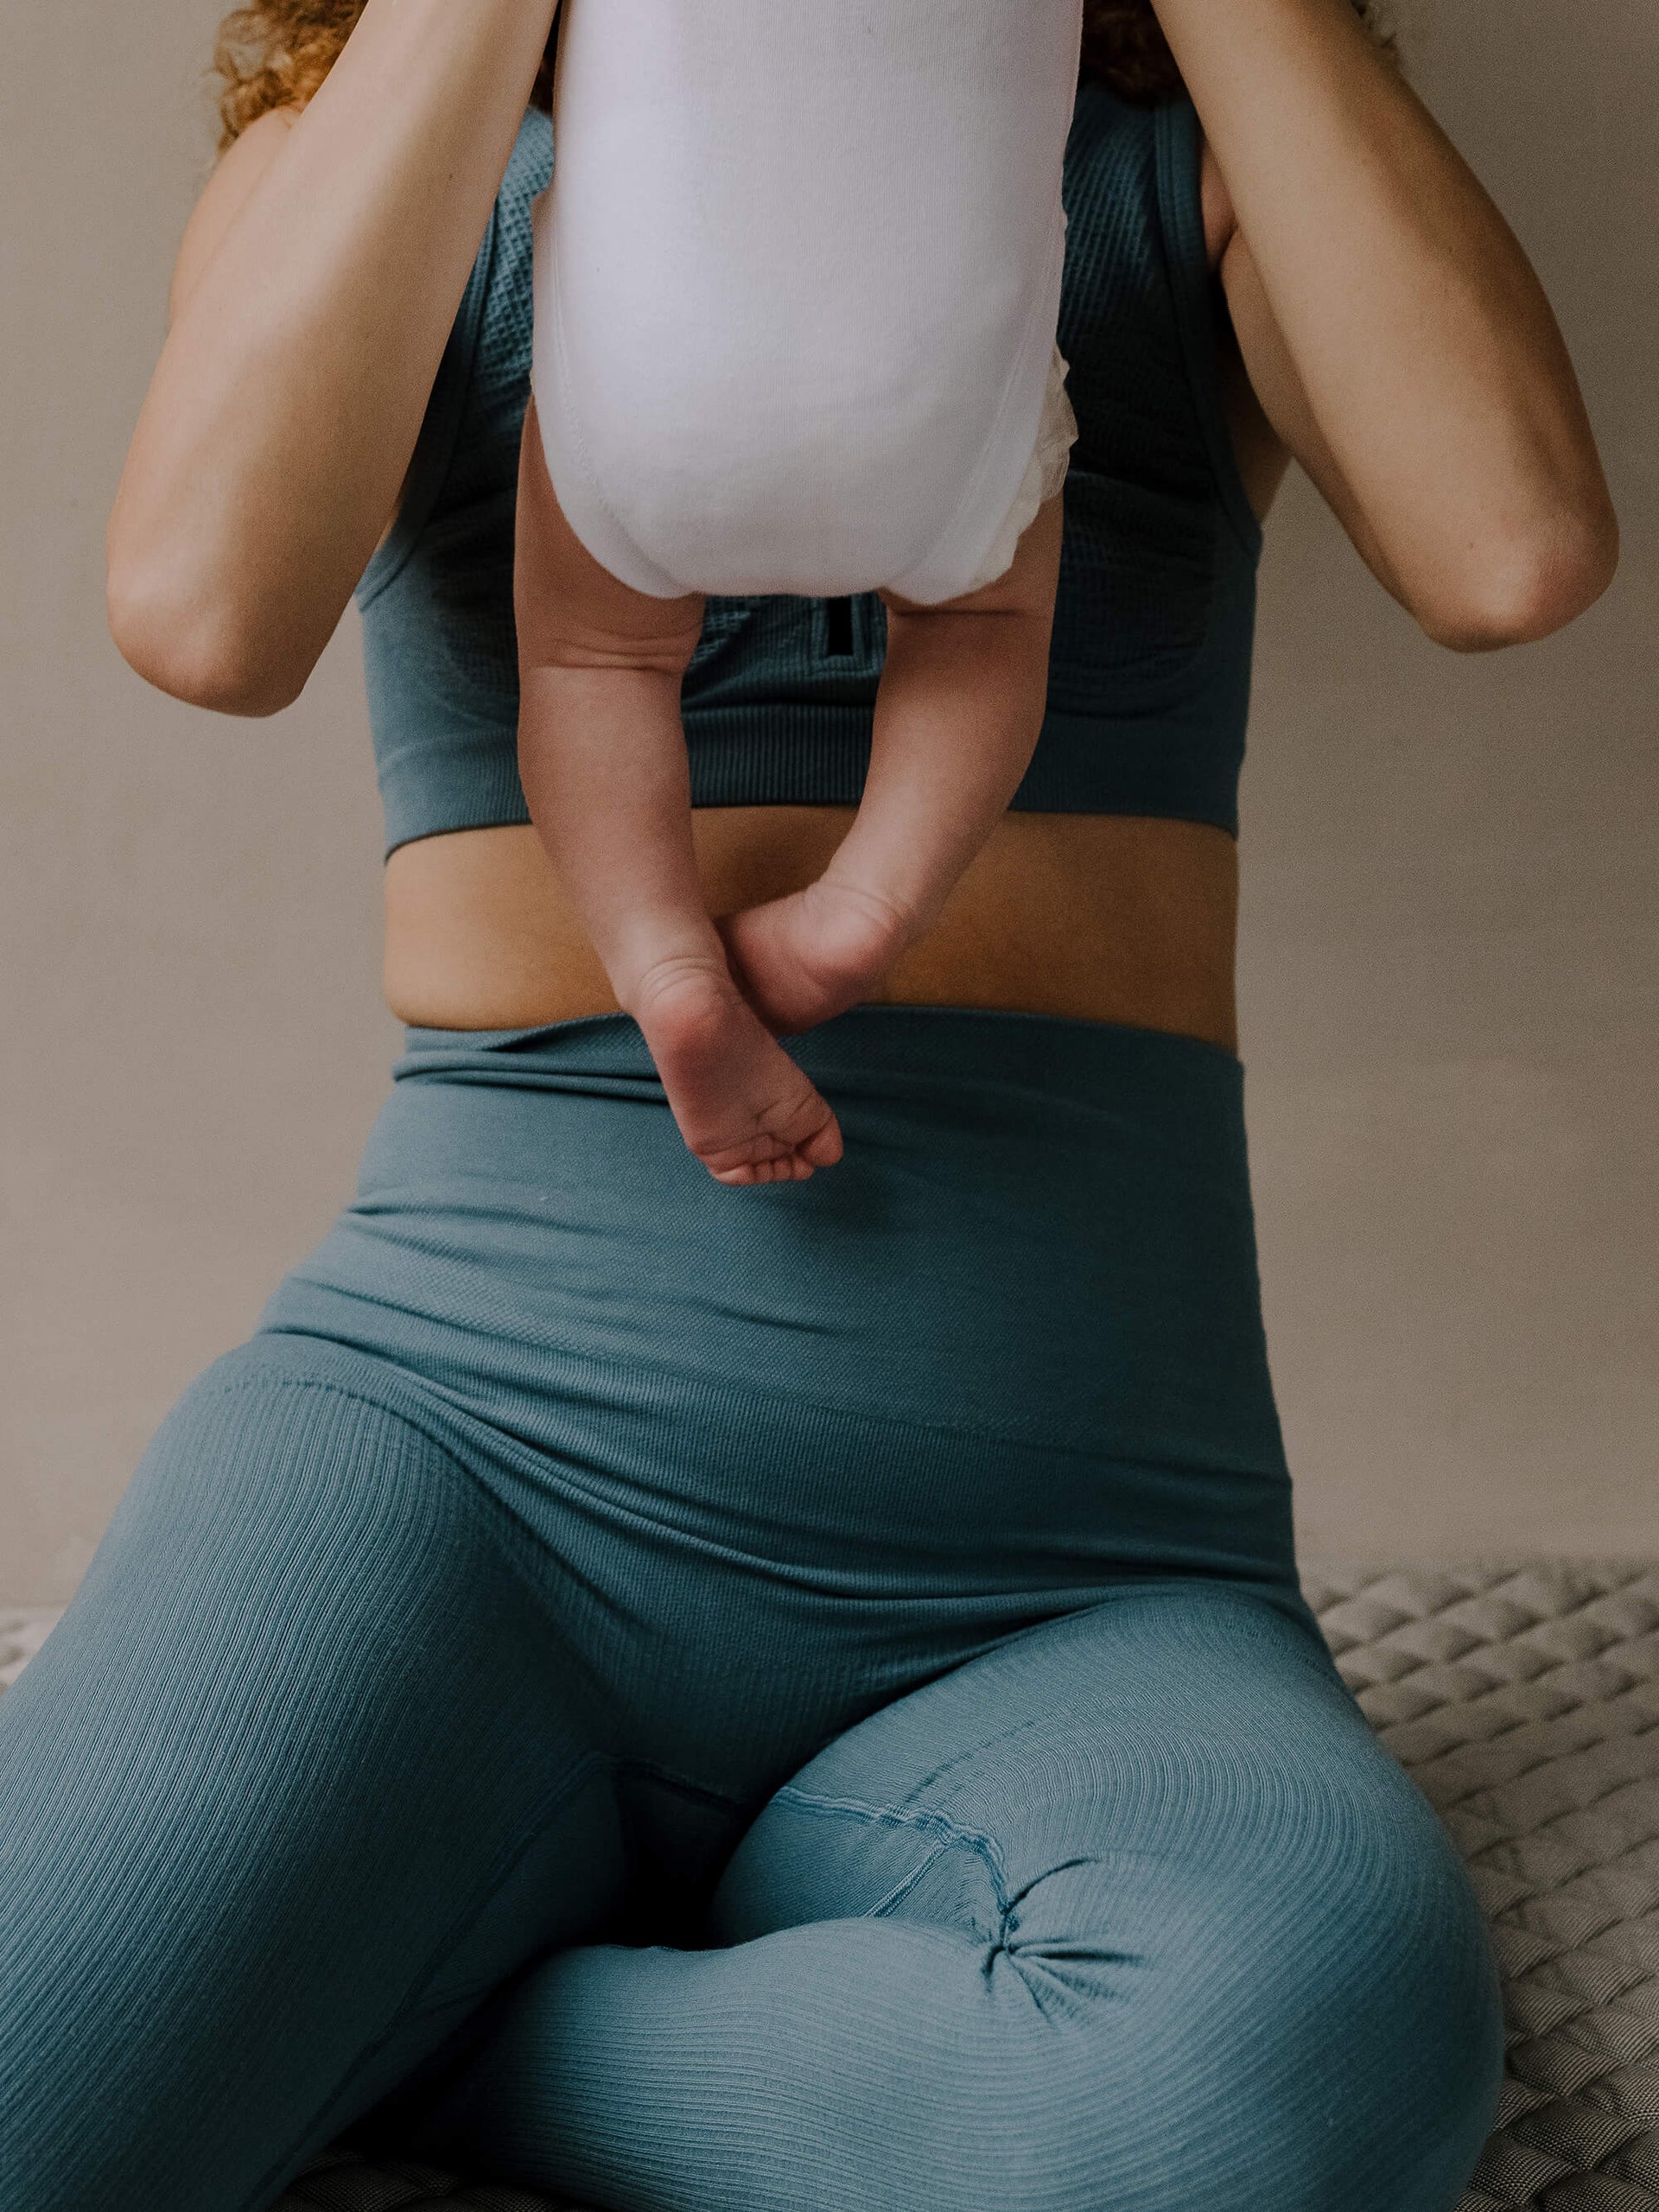 Jorgen House Blue colour high waist leggings on female body holding her baby